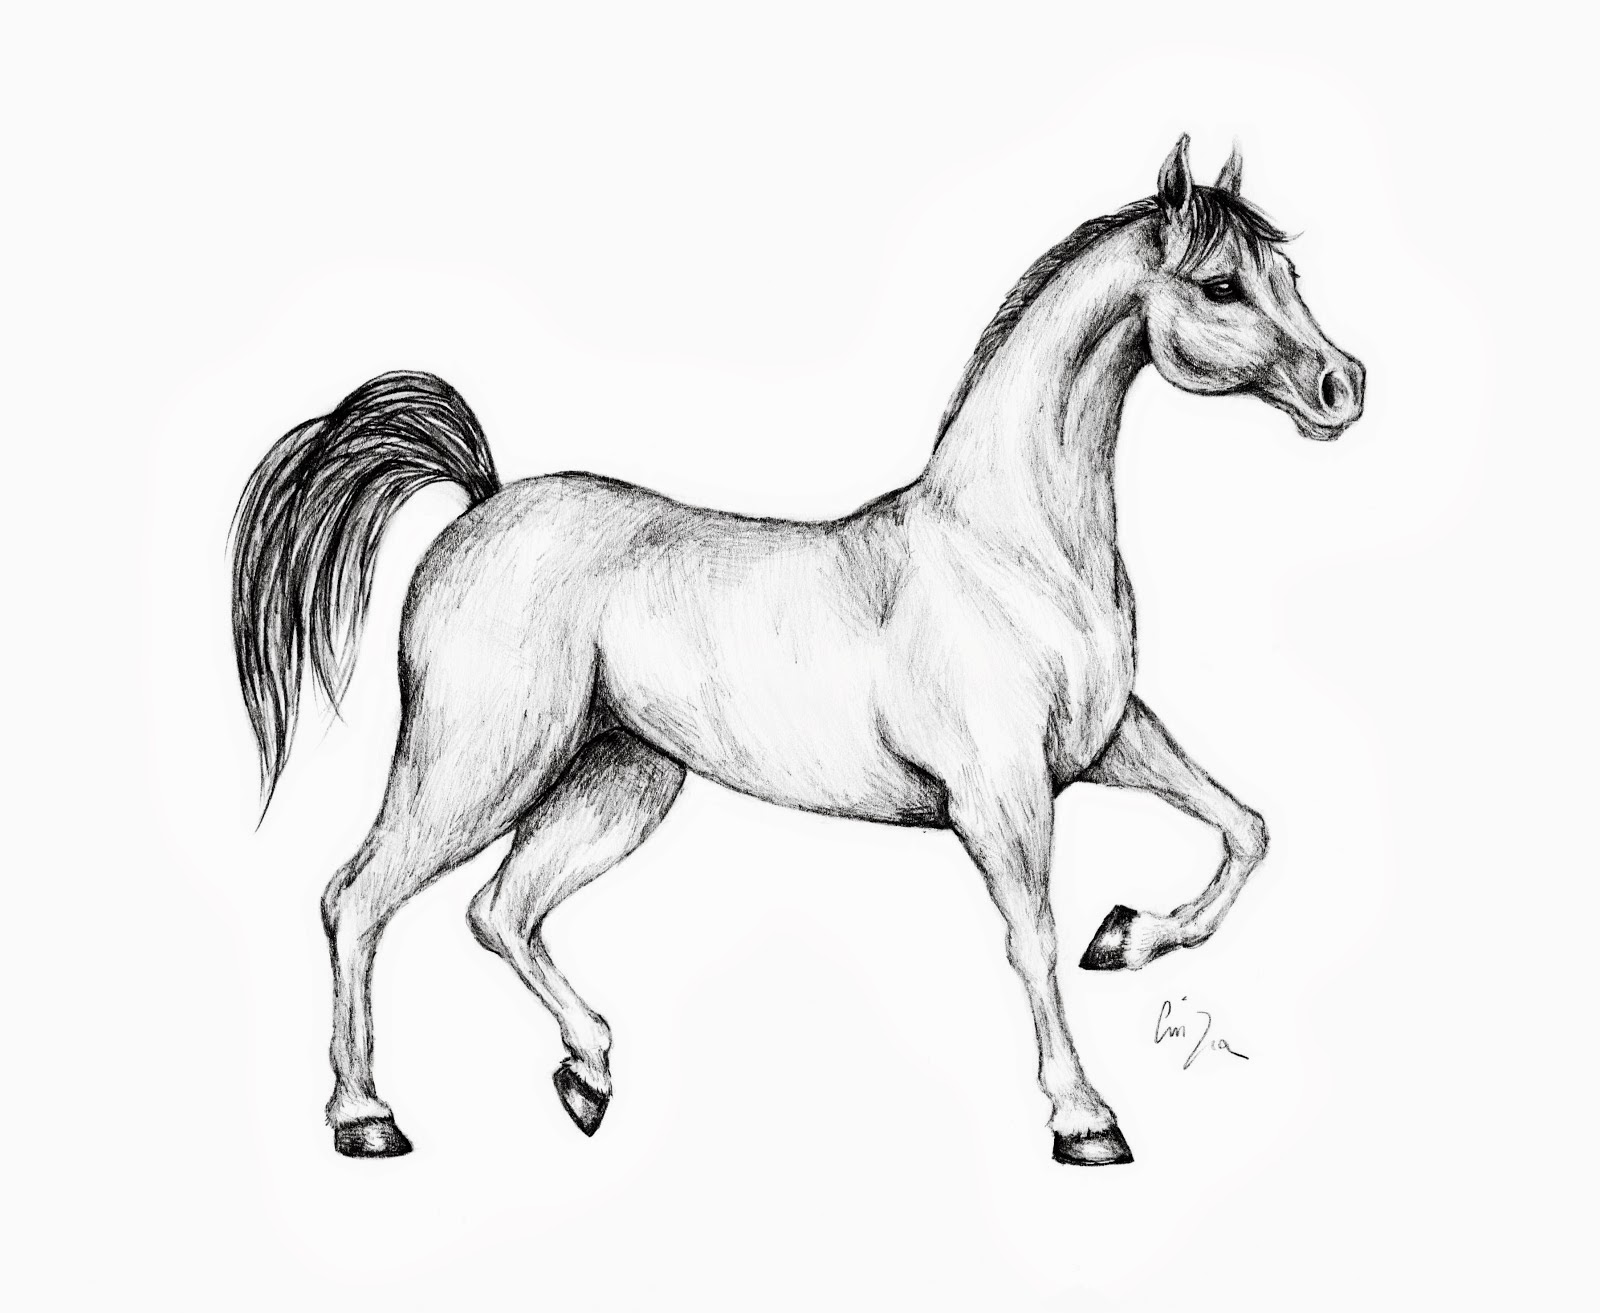 Disegni da colorare di cavalli for Immagini di cavalli da disegnare